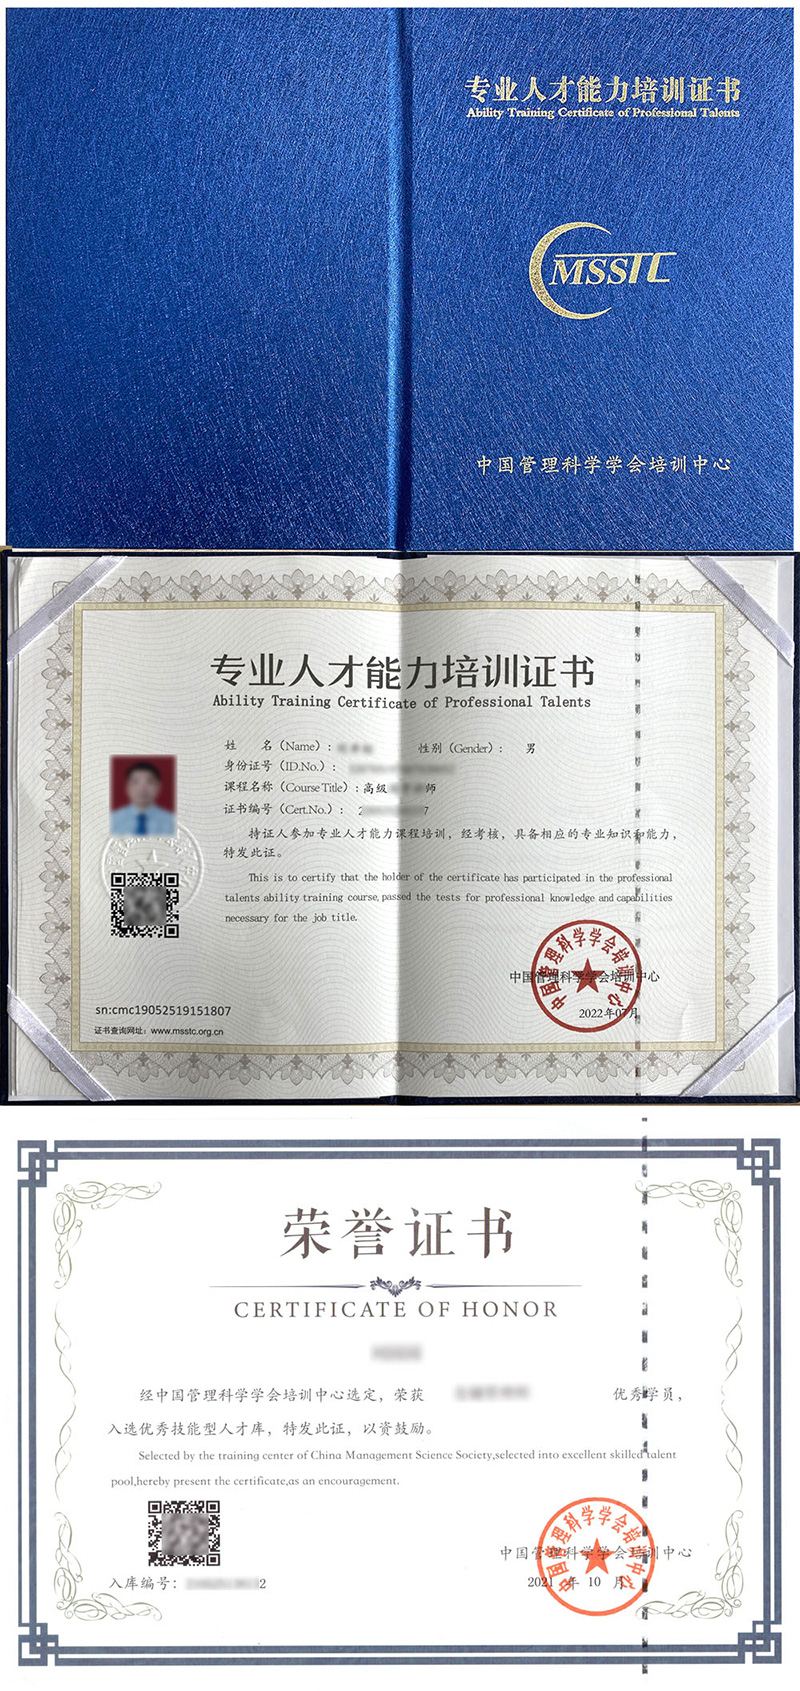 中国管理科学学会培训中心 专业人才能力培训证书 企业社会责任管理师证证书样本